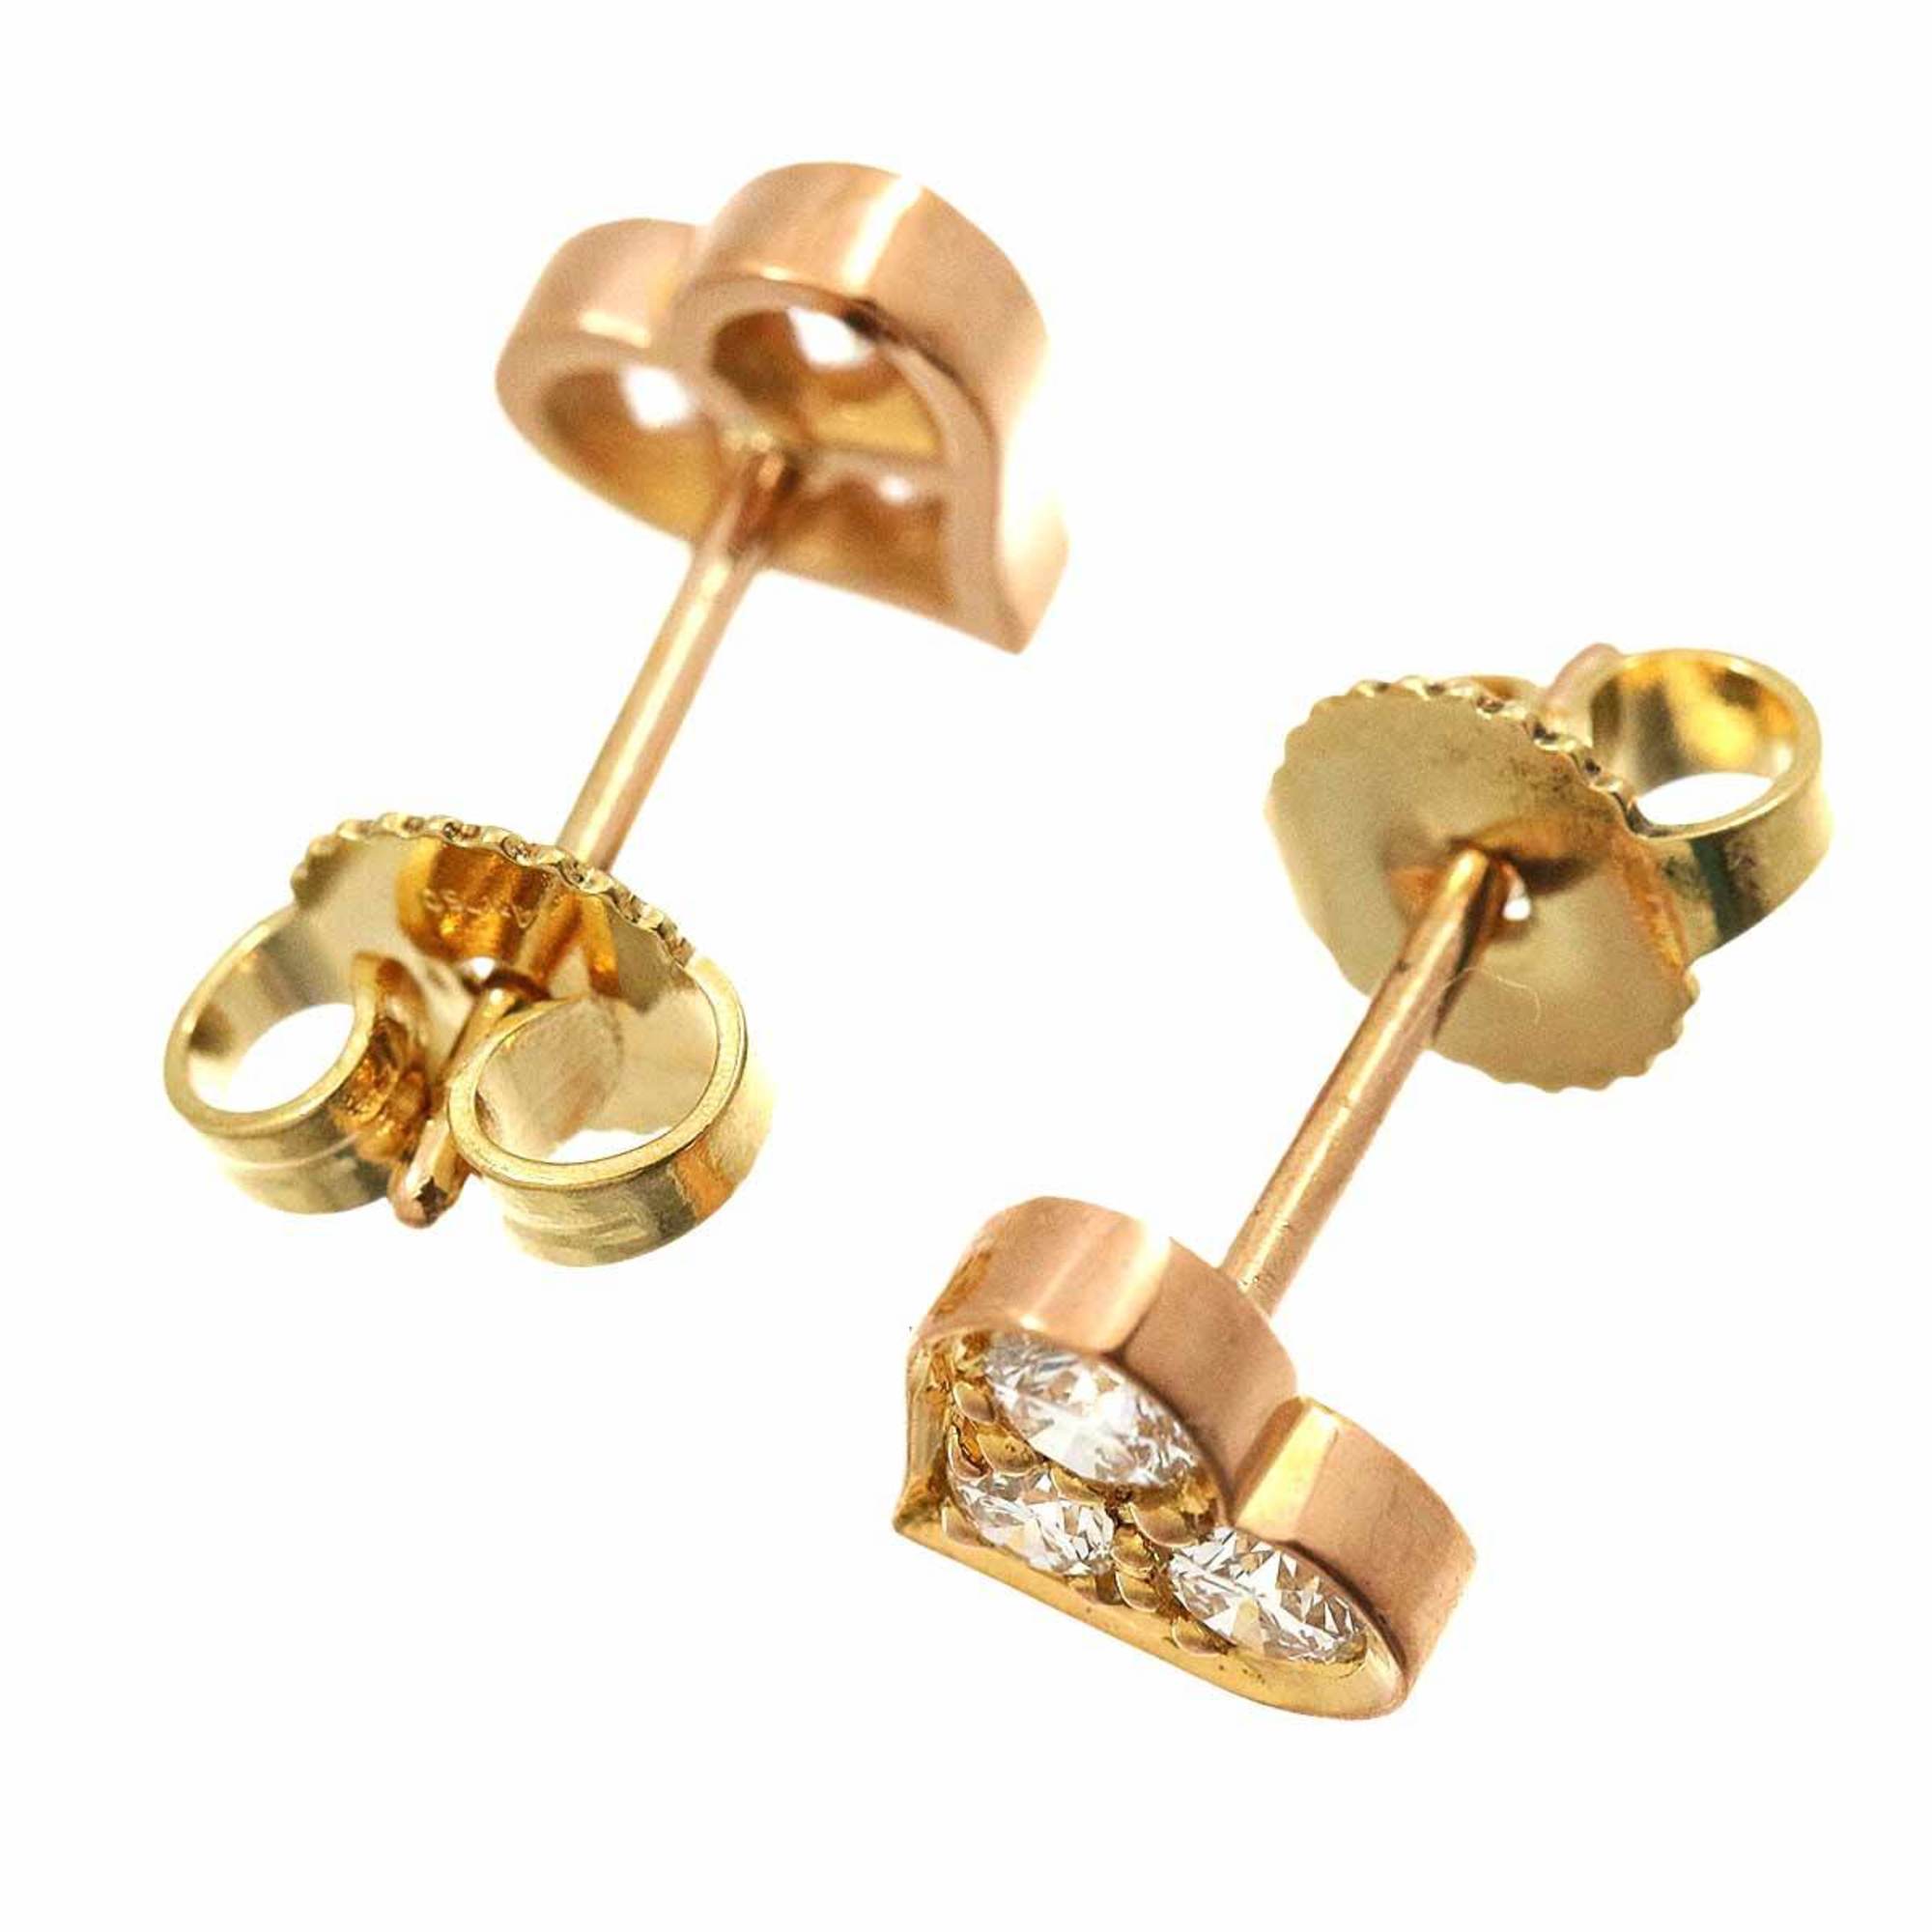 Tiffany & Co. Sentimental Heart Diamond Earrings K18 PG YG Pink Yellow Gold 750 Pierced